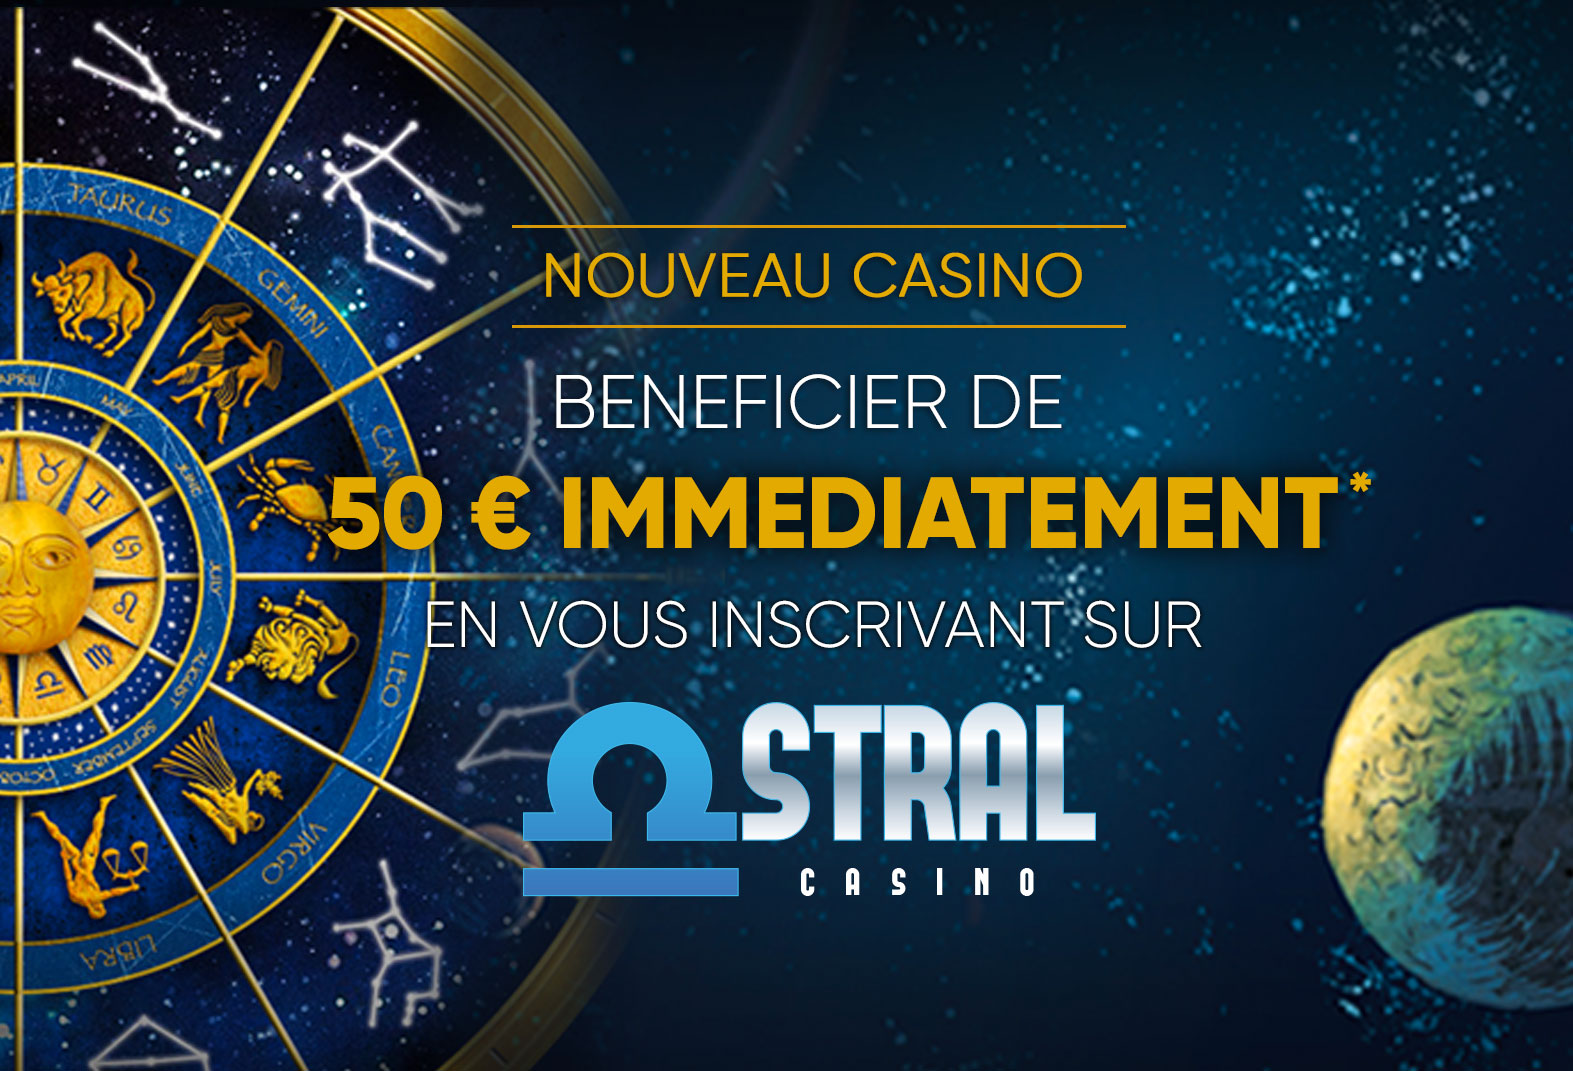 Casino Astral